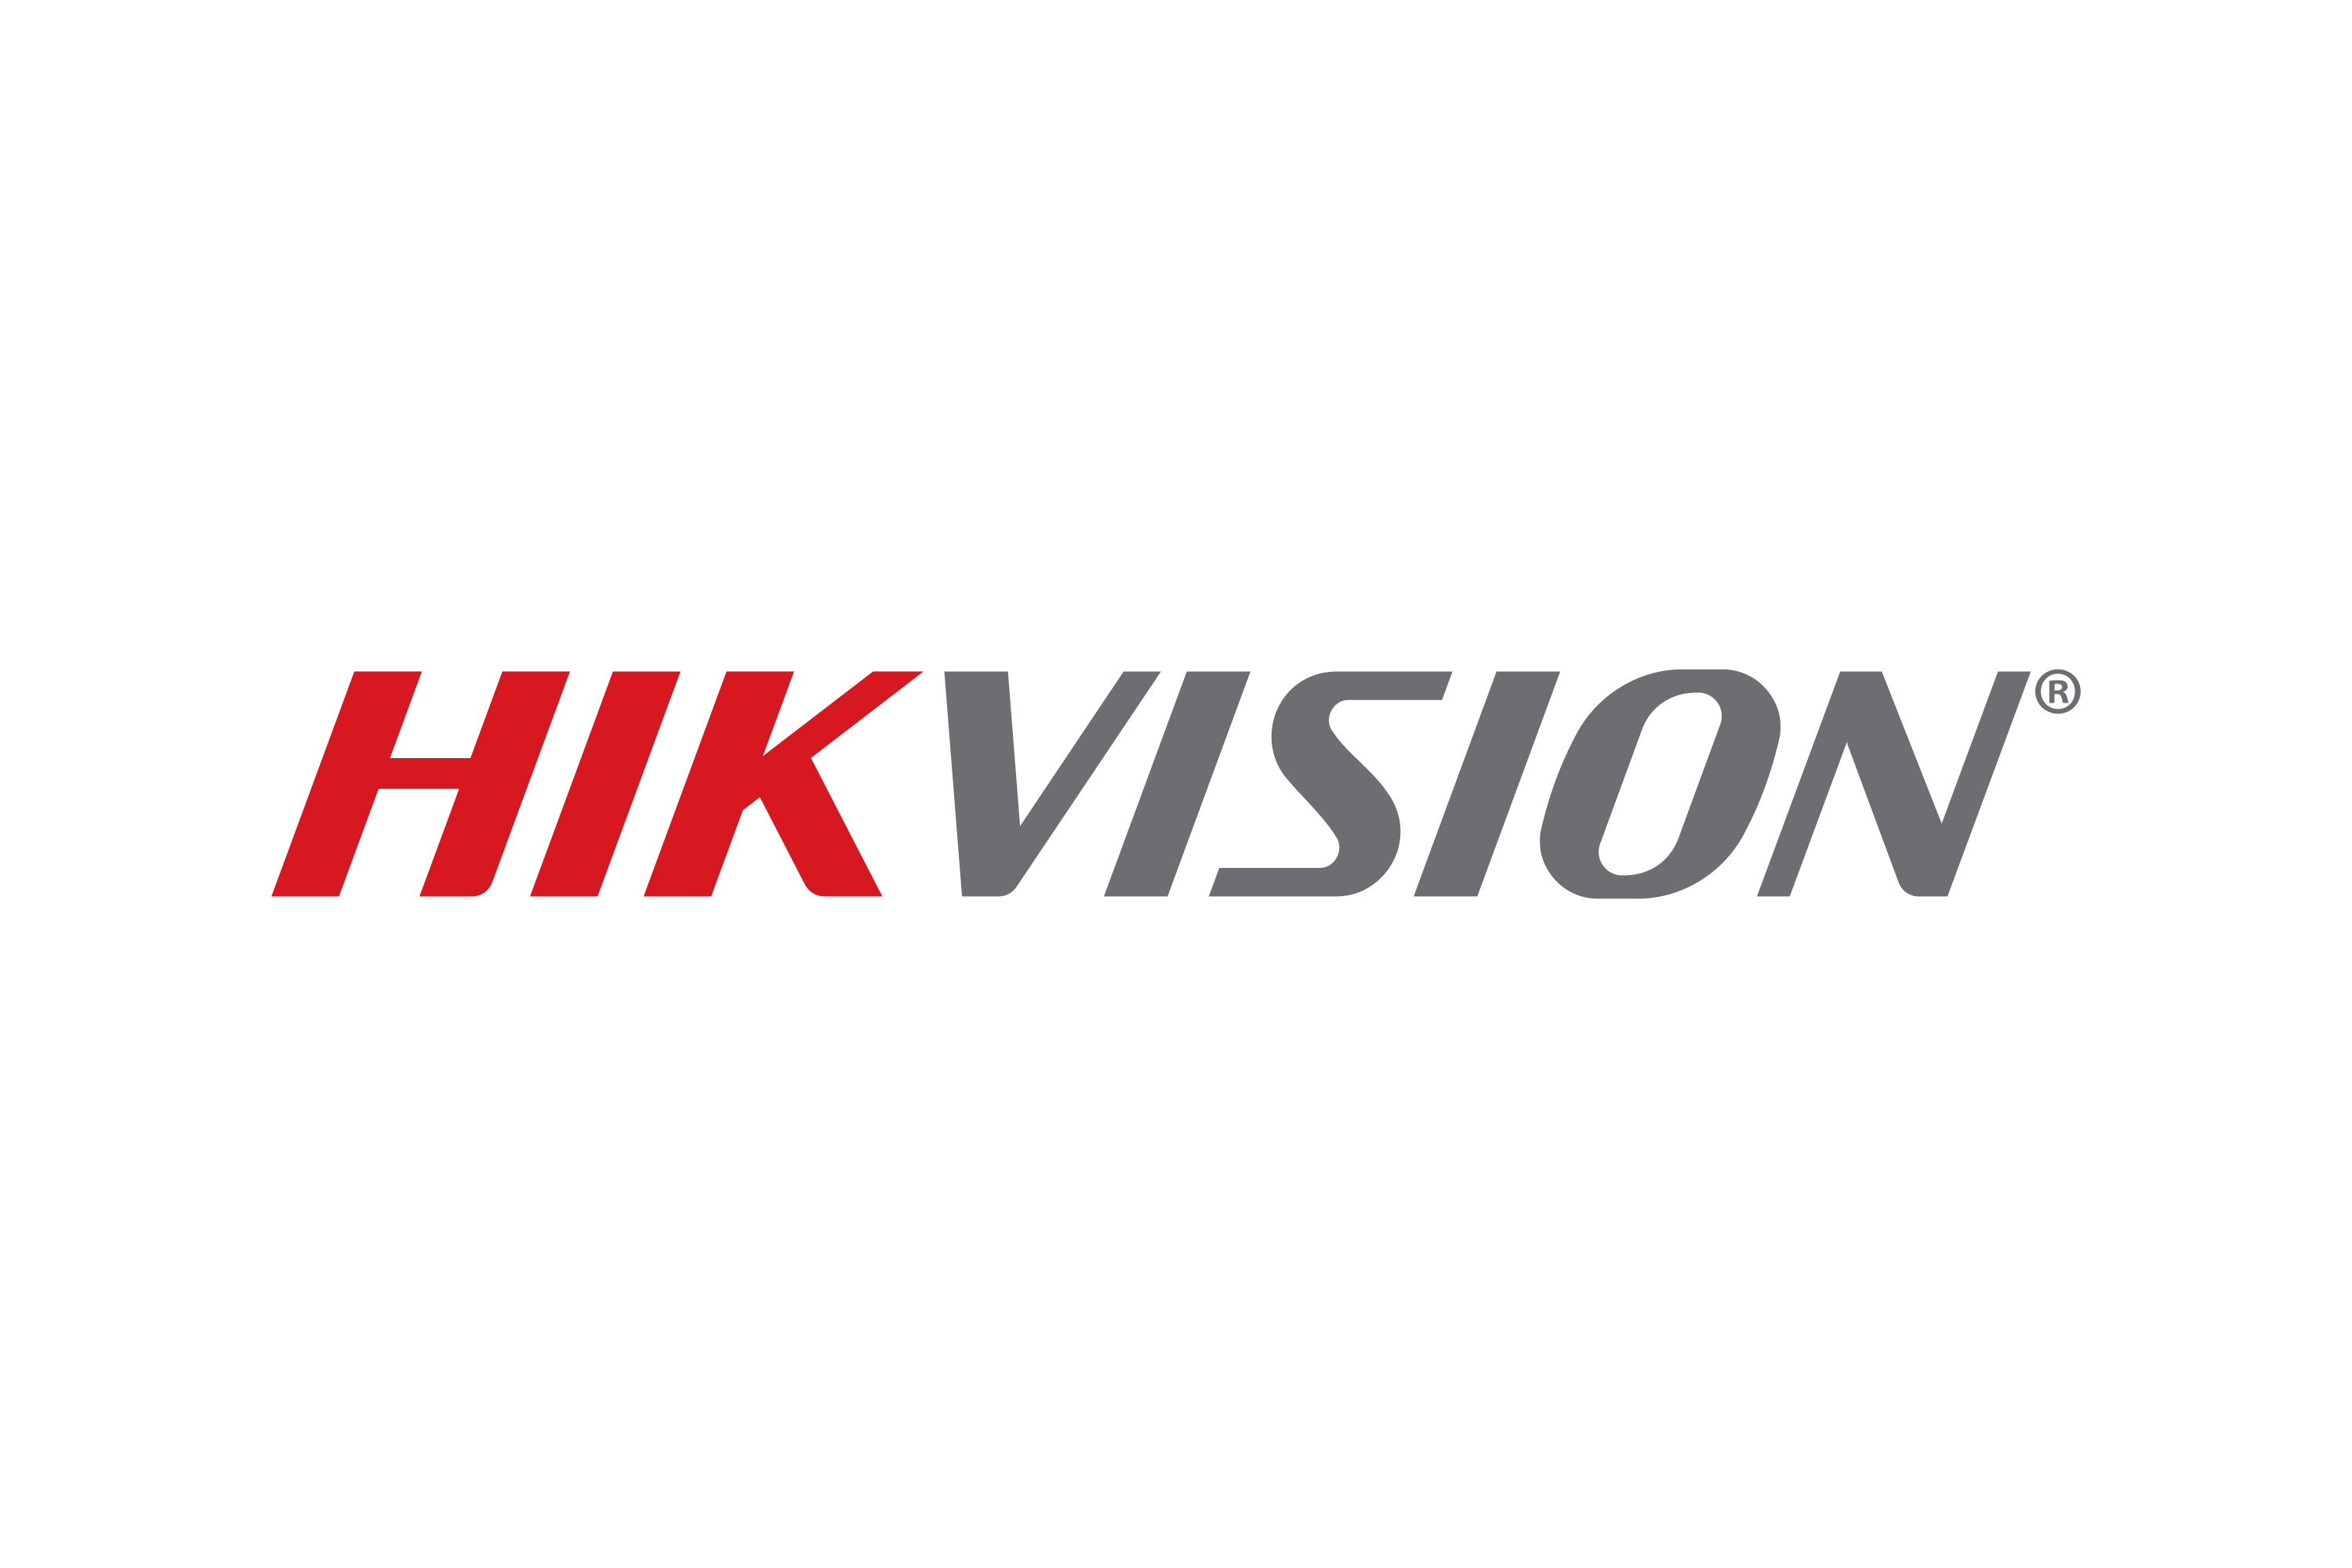 Vision Logo PNG Transparent Images Free Download